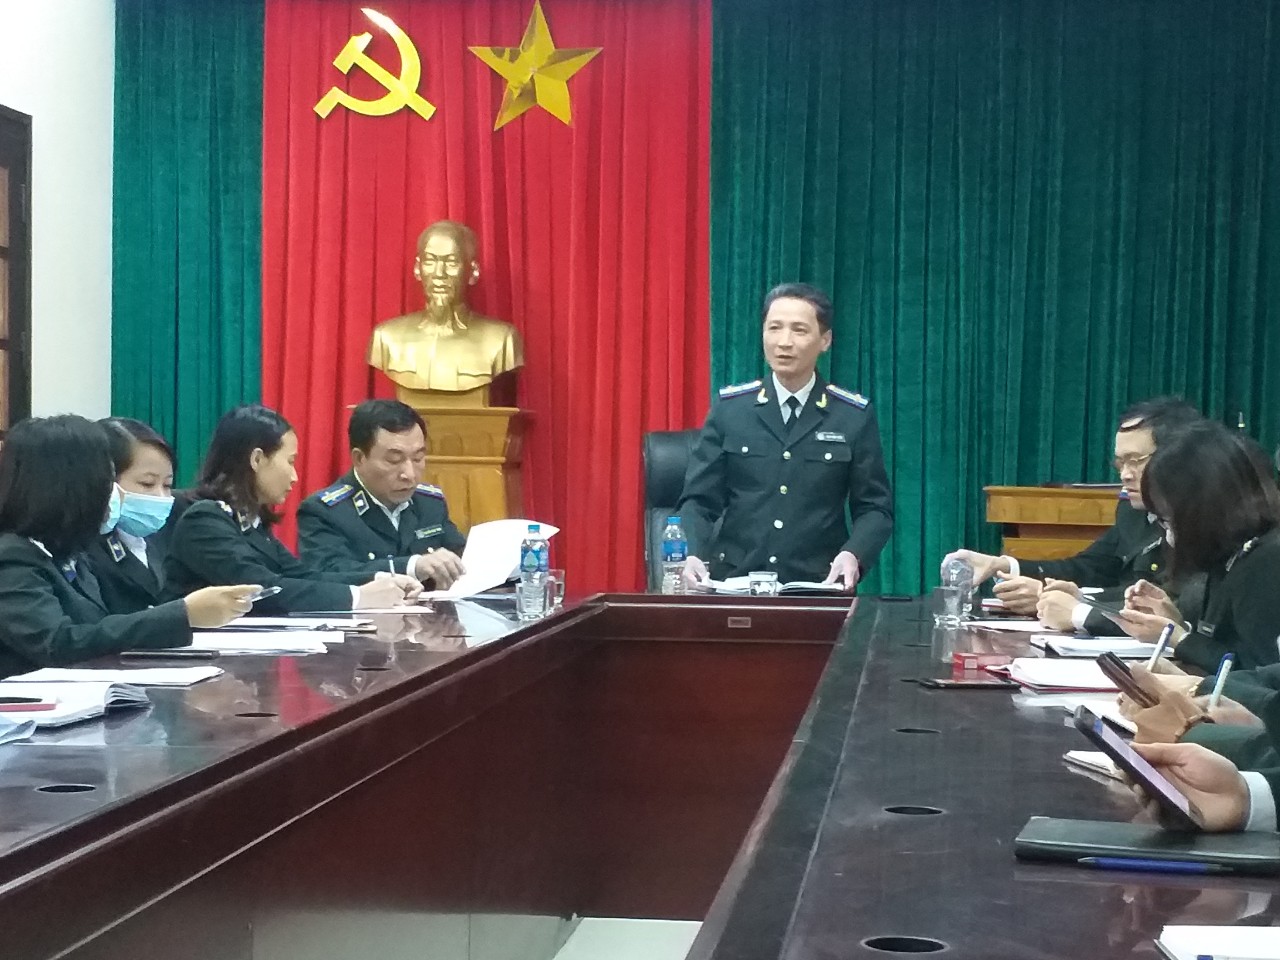 Cục Thi hành án dân sự tỉnh Hải Dương kiểm tra công tác Thi hành án dân sự tại Chi cục Thi hành án dân sự thành phố Hải Dương.